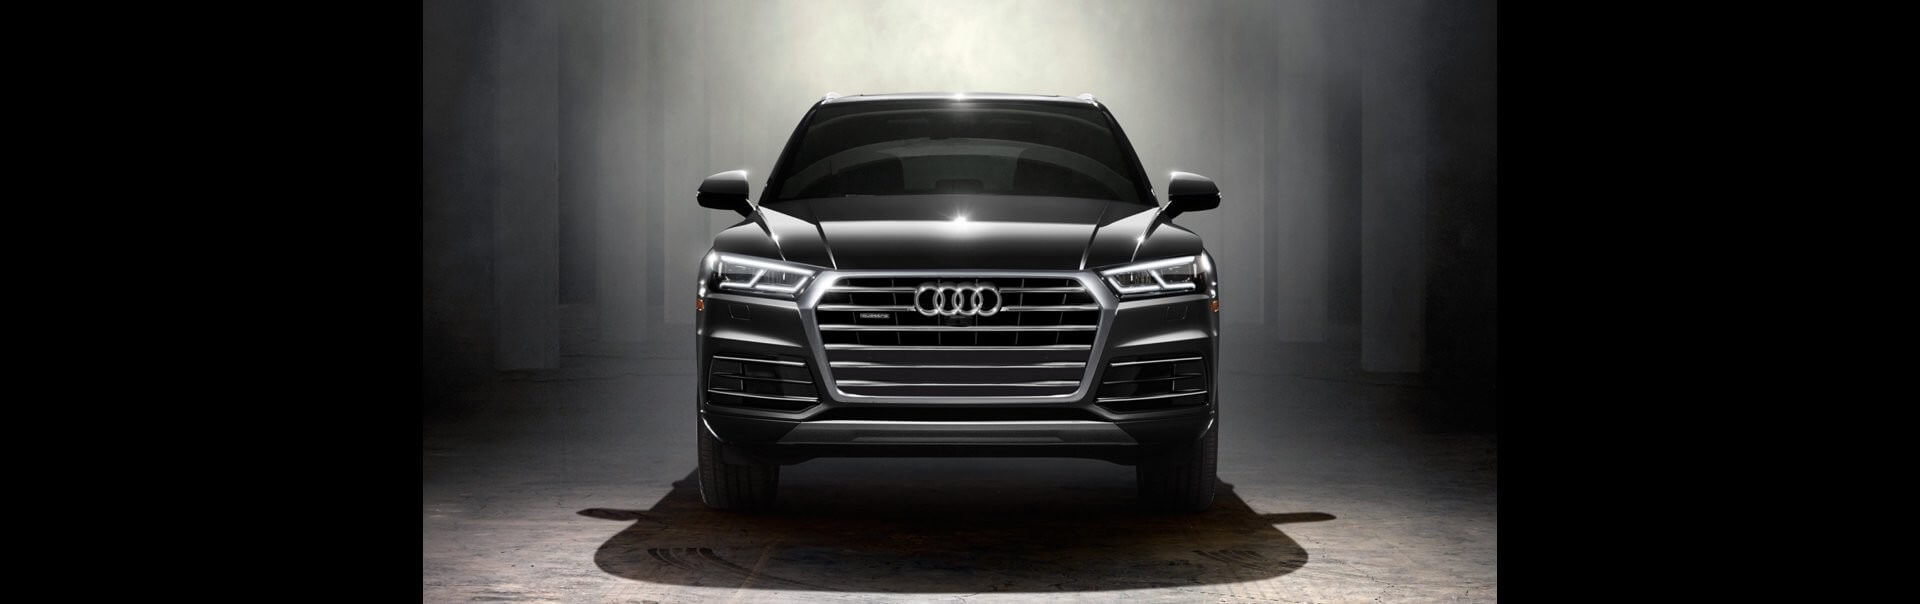 Audi Q5 lease